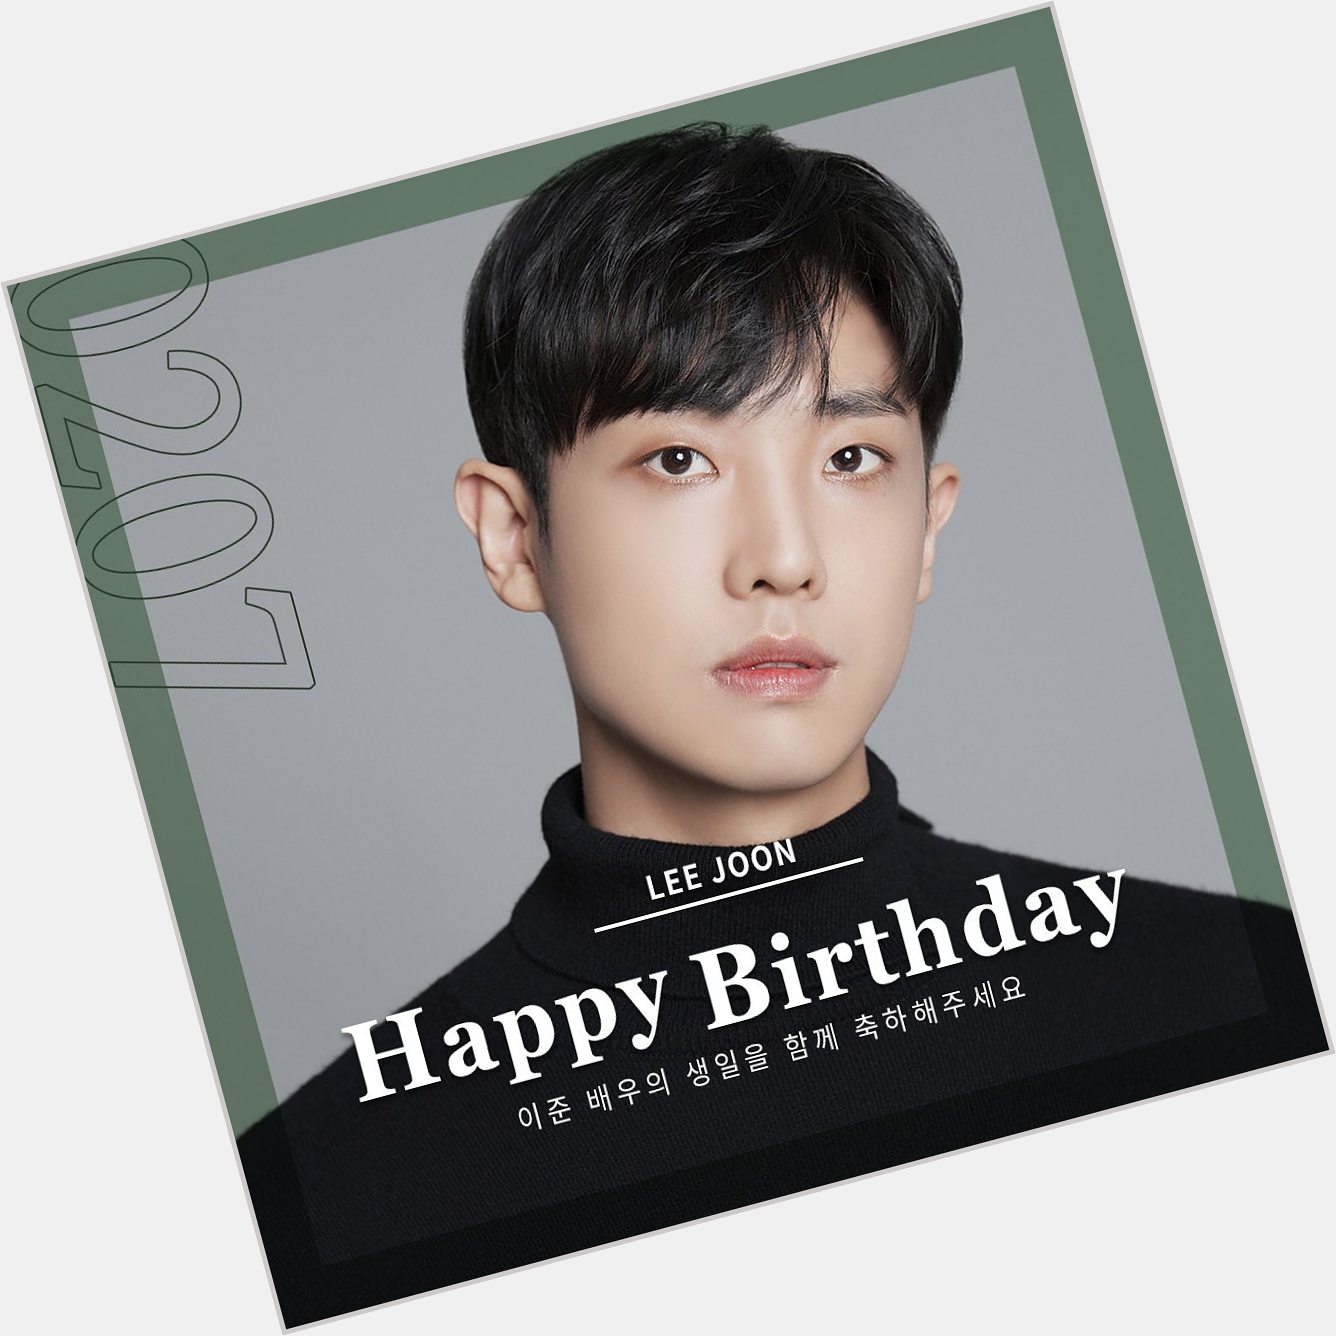 Aye happy birthday actor lee joon 